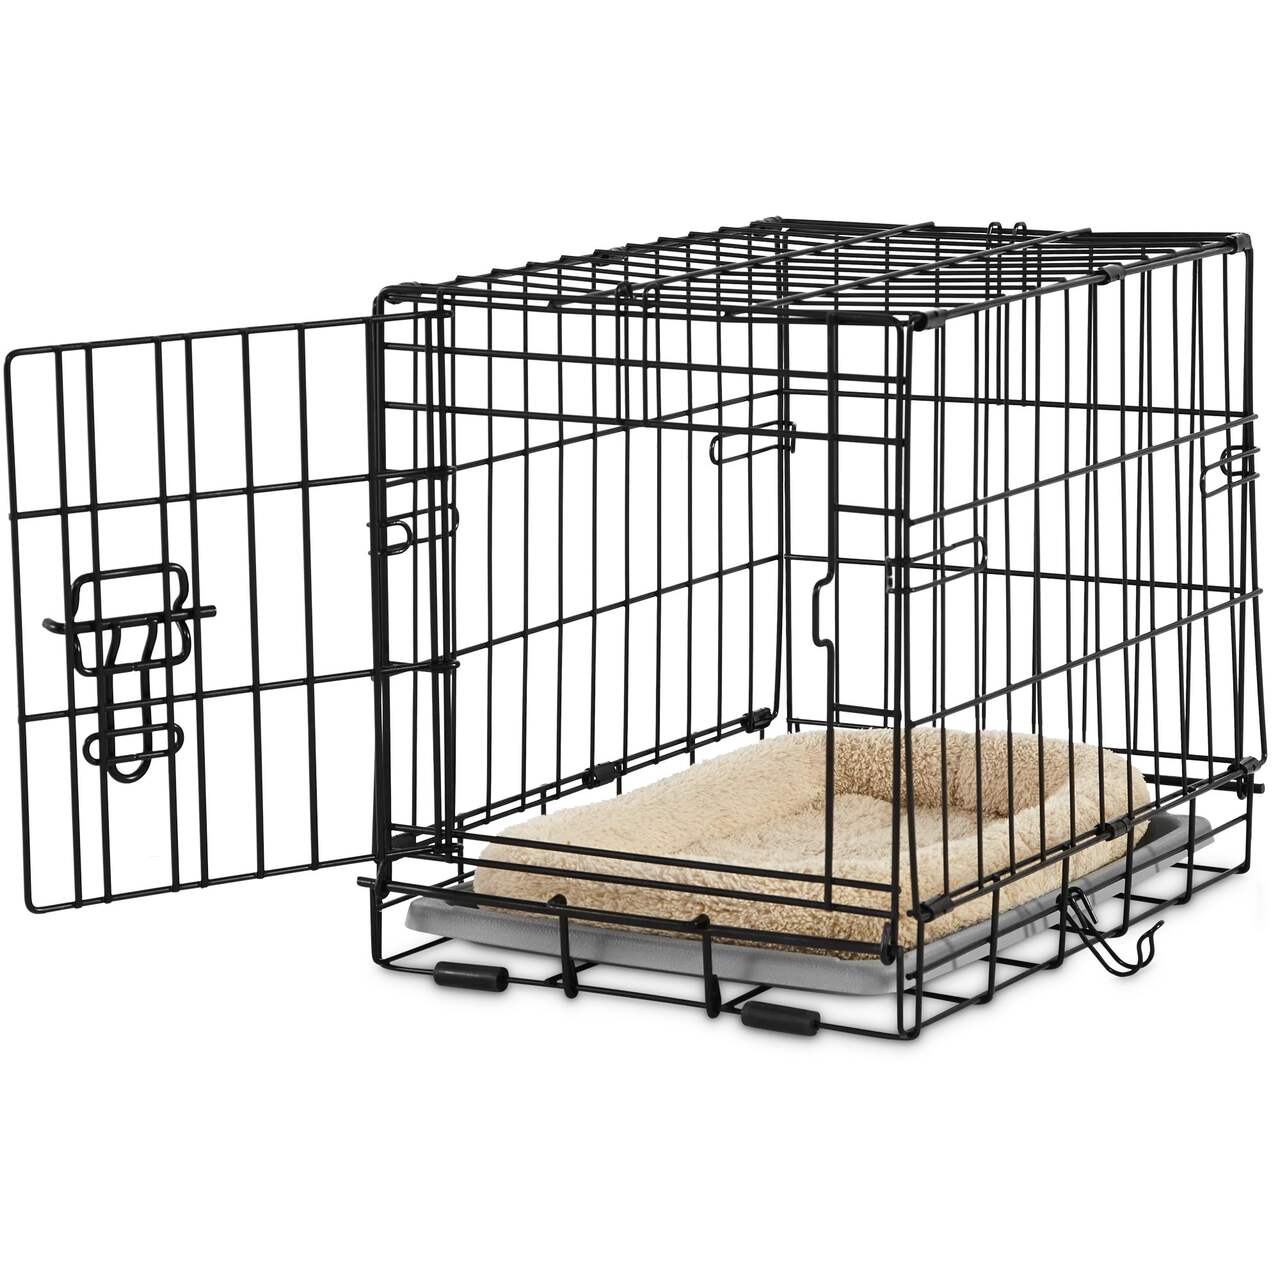 Cage D'Intérieur Pliante / INT-001 - Cage chien, Cage chien xxl